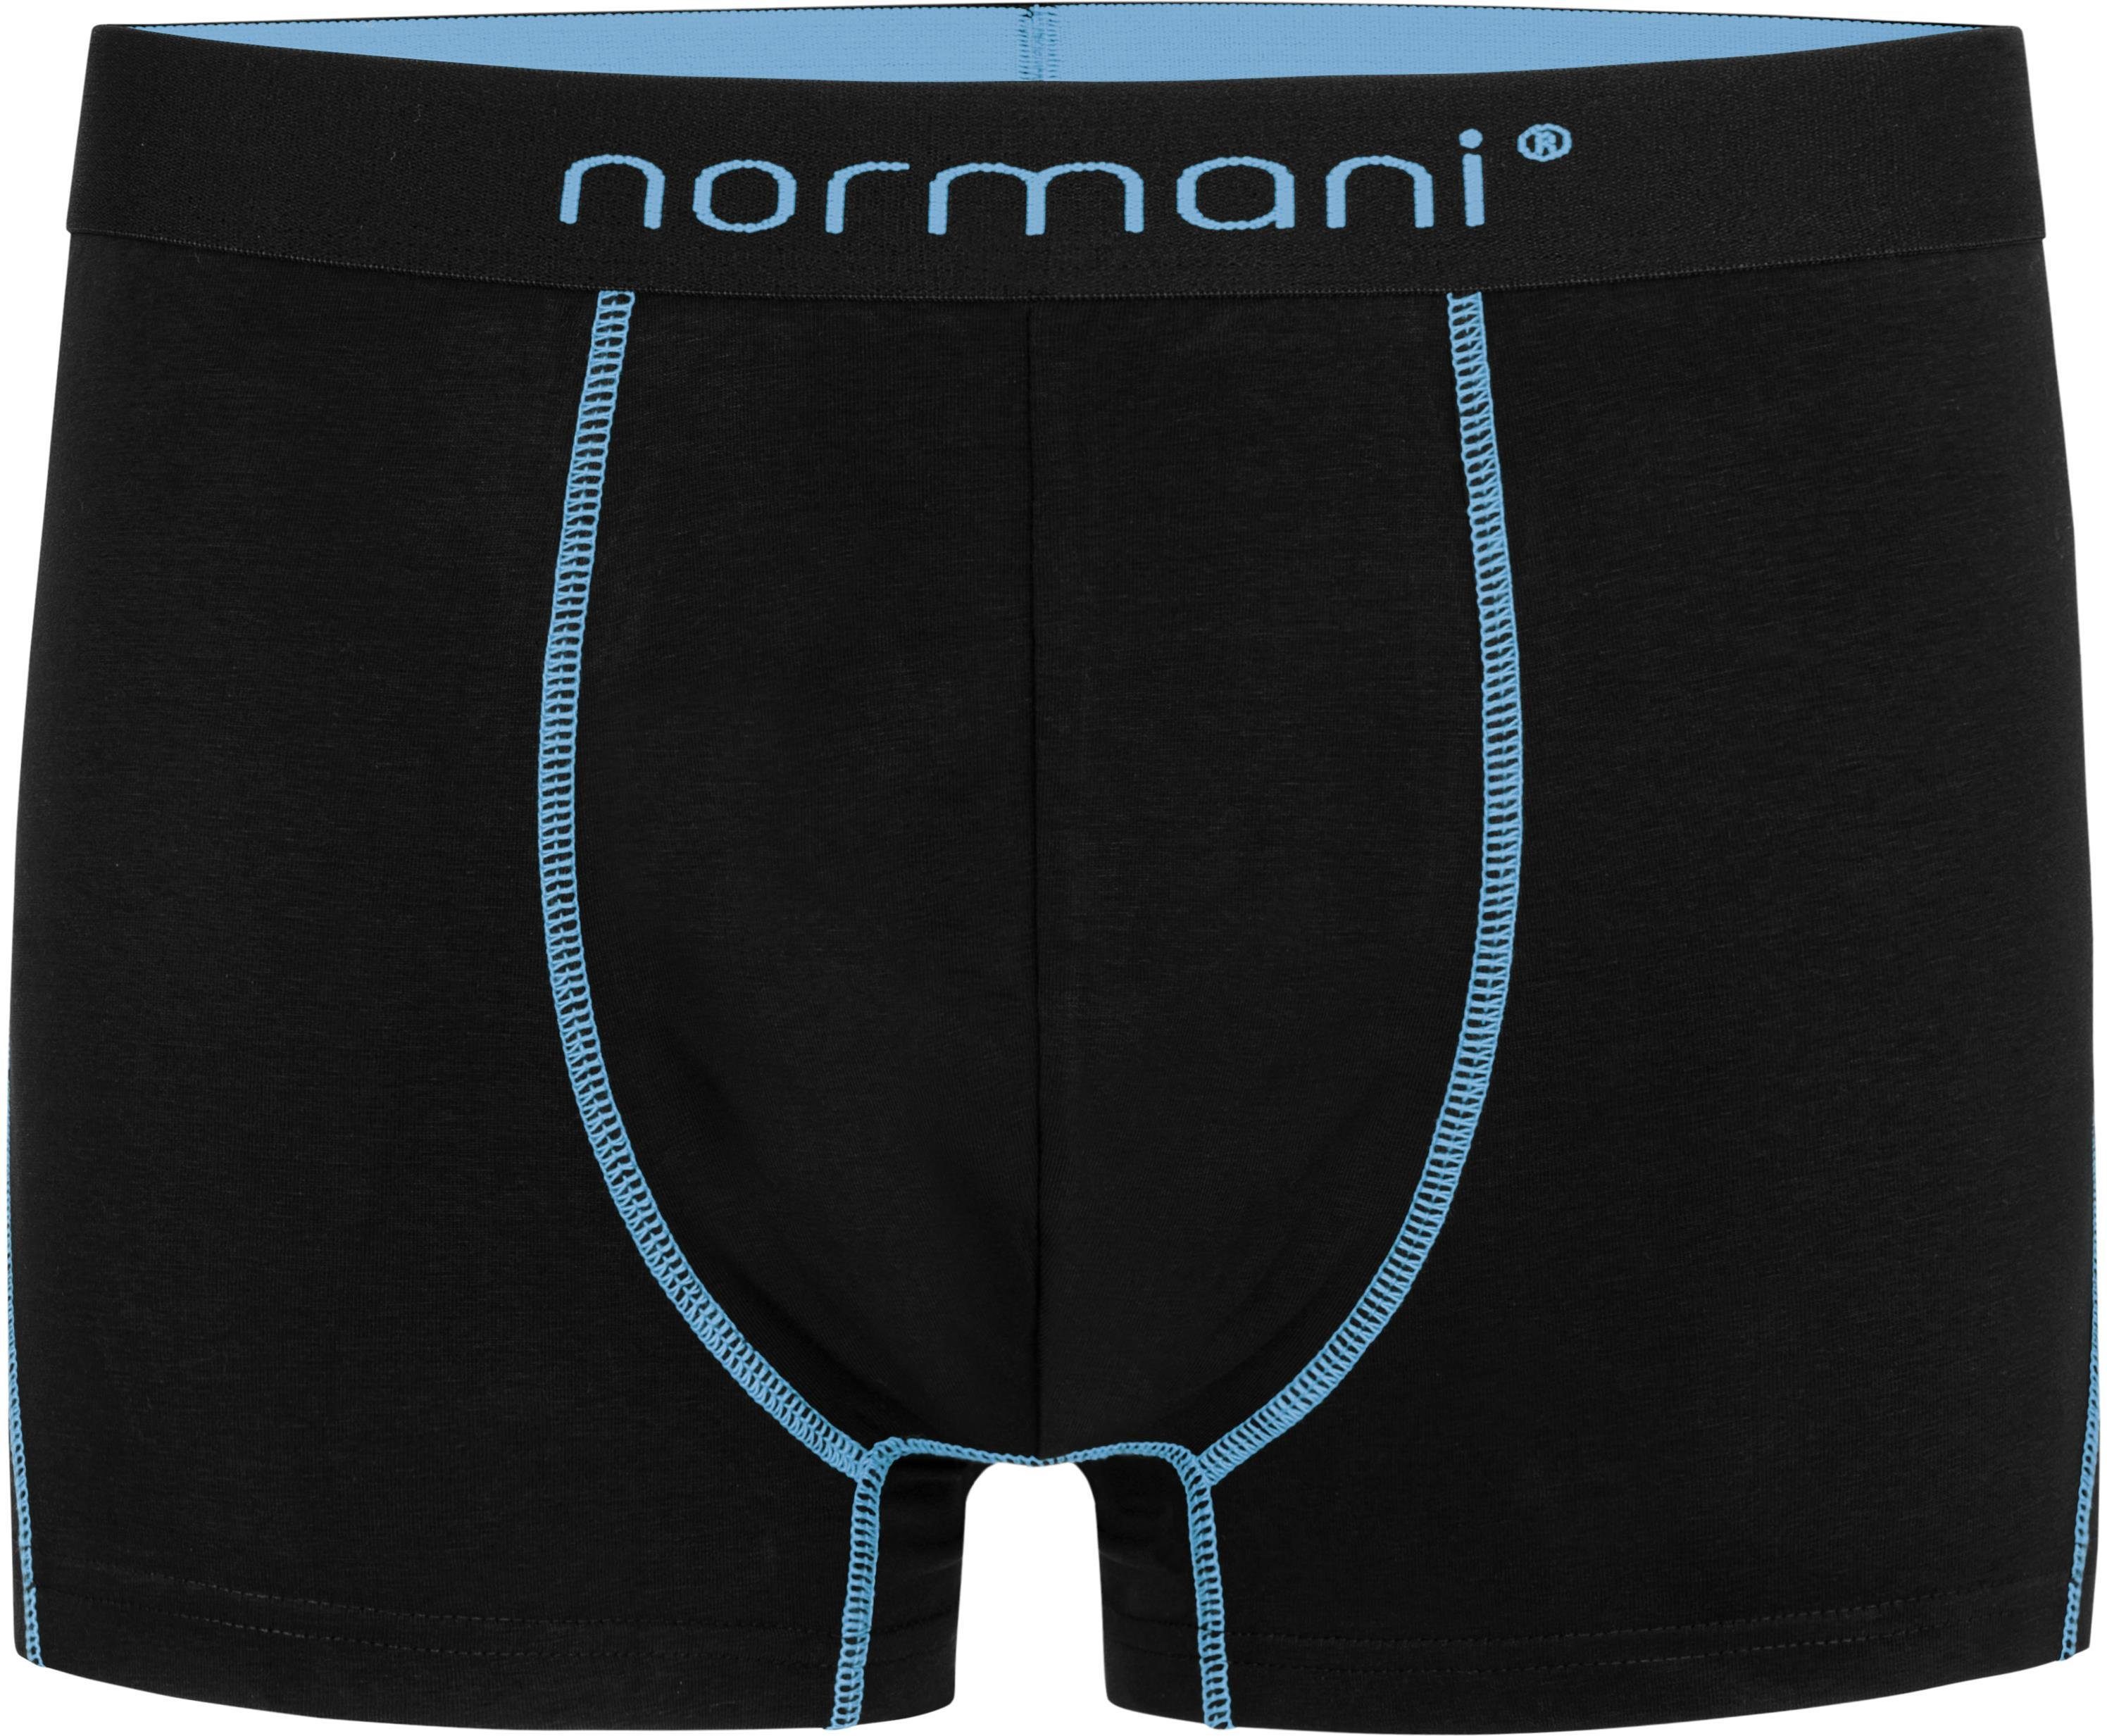 Männer für aus Boxershorts atmungsaktiver 6 Boxershorts Baumwolle normani Baumwolle Unterhose Hellblau weiche aus